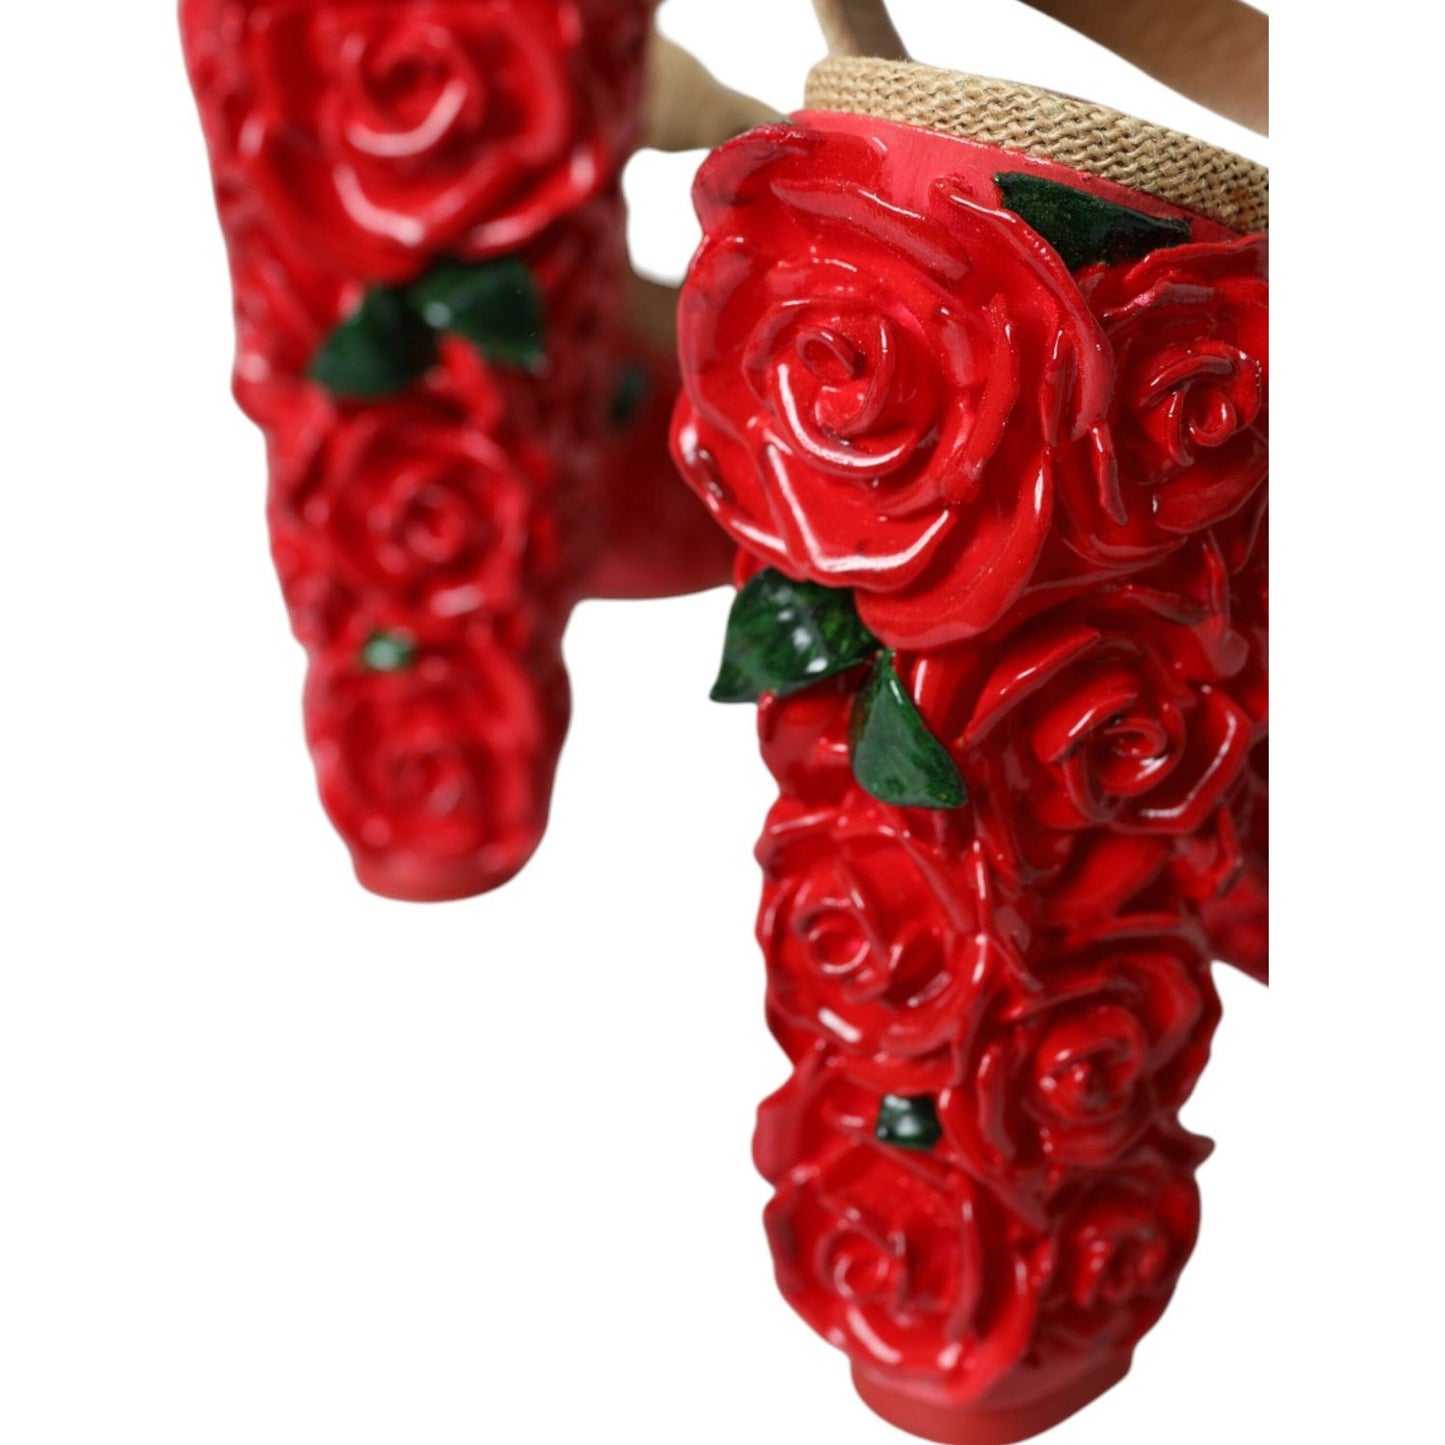 Dolce & Gabbana Red Roses Crystal Platform Sandals Shoes red-roses-crystal-platform-sandals-shoes